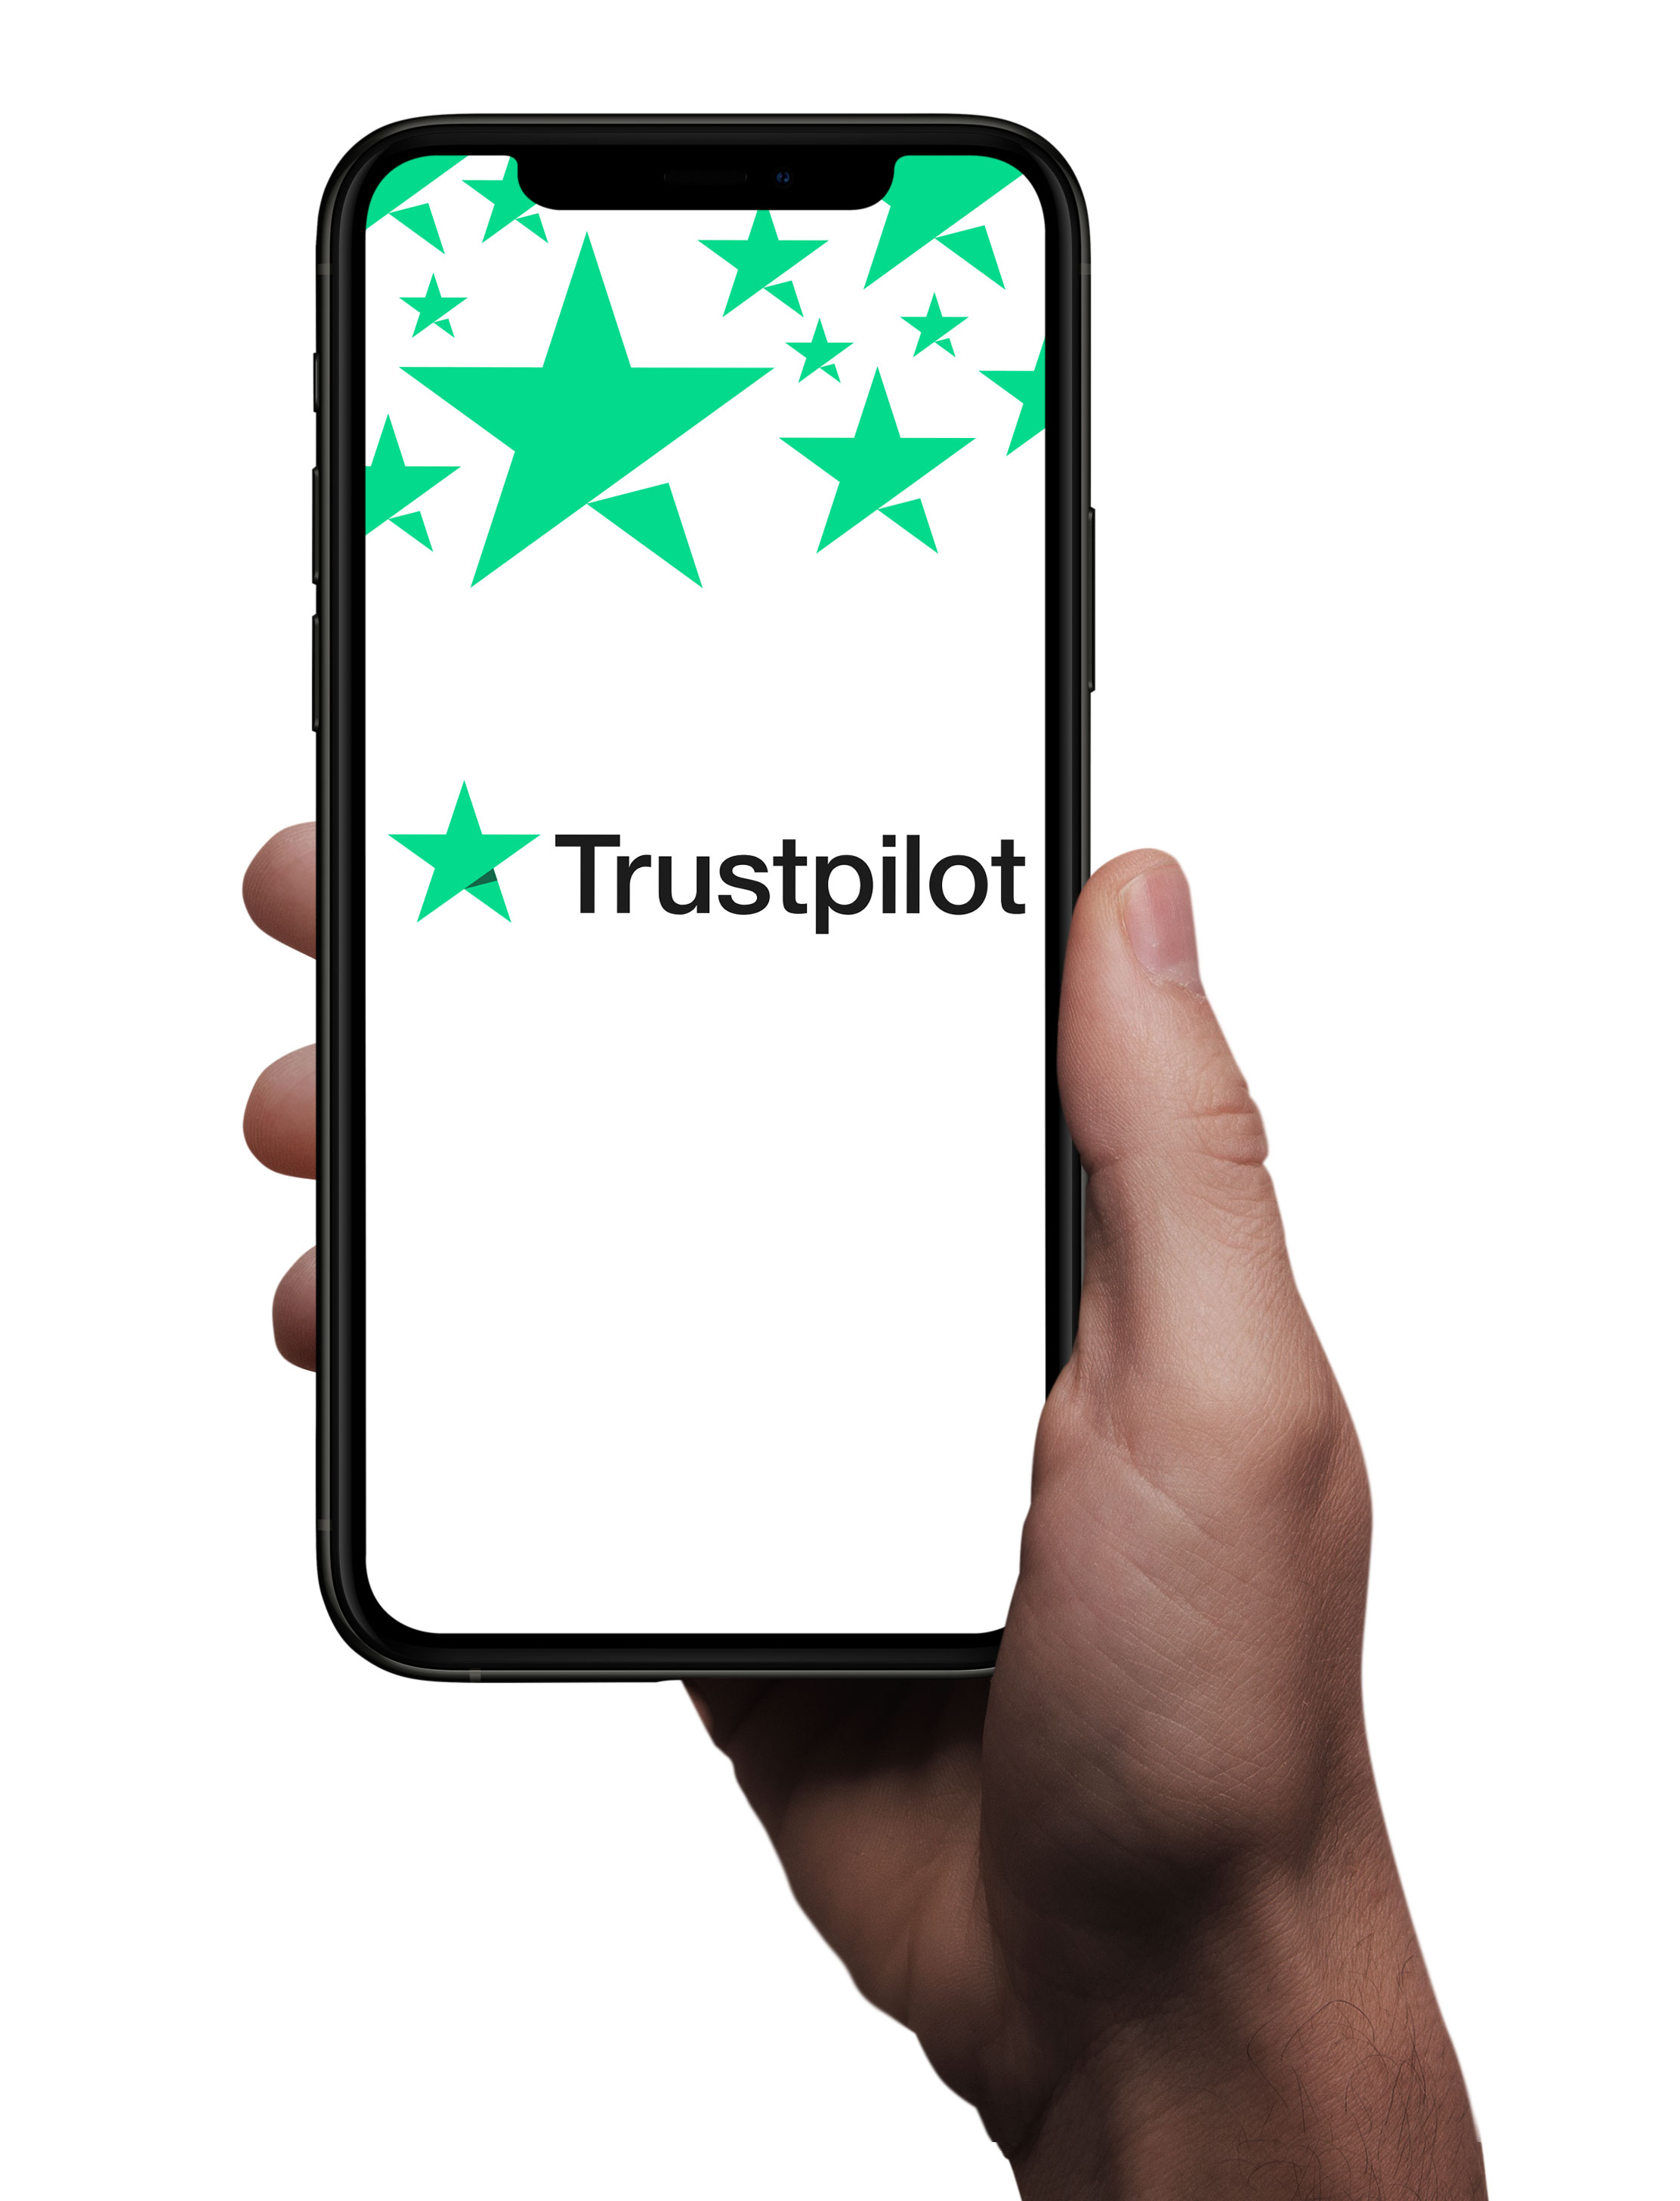 Trustpilot phone